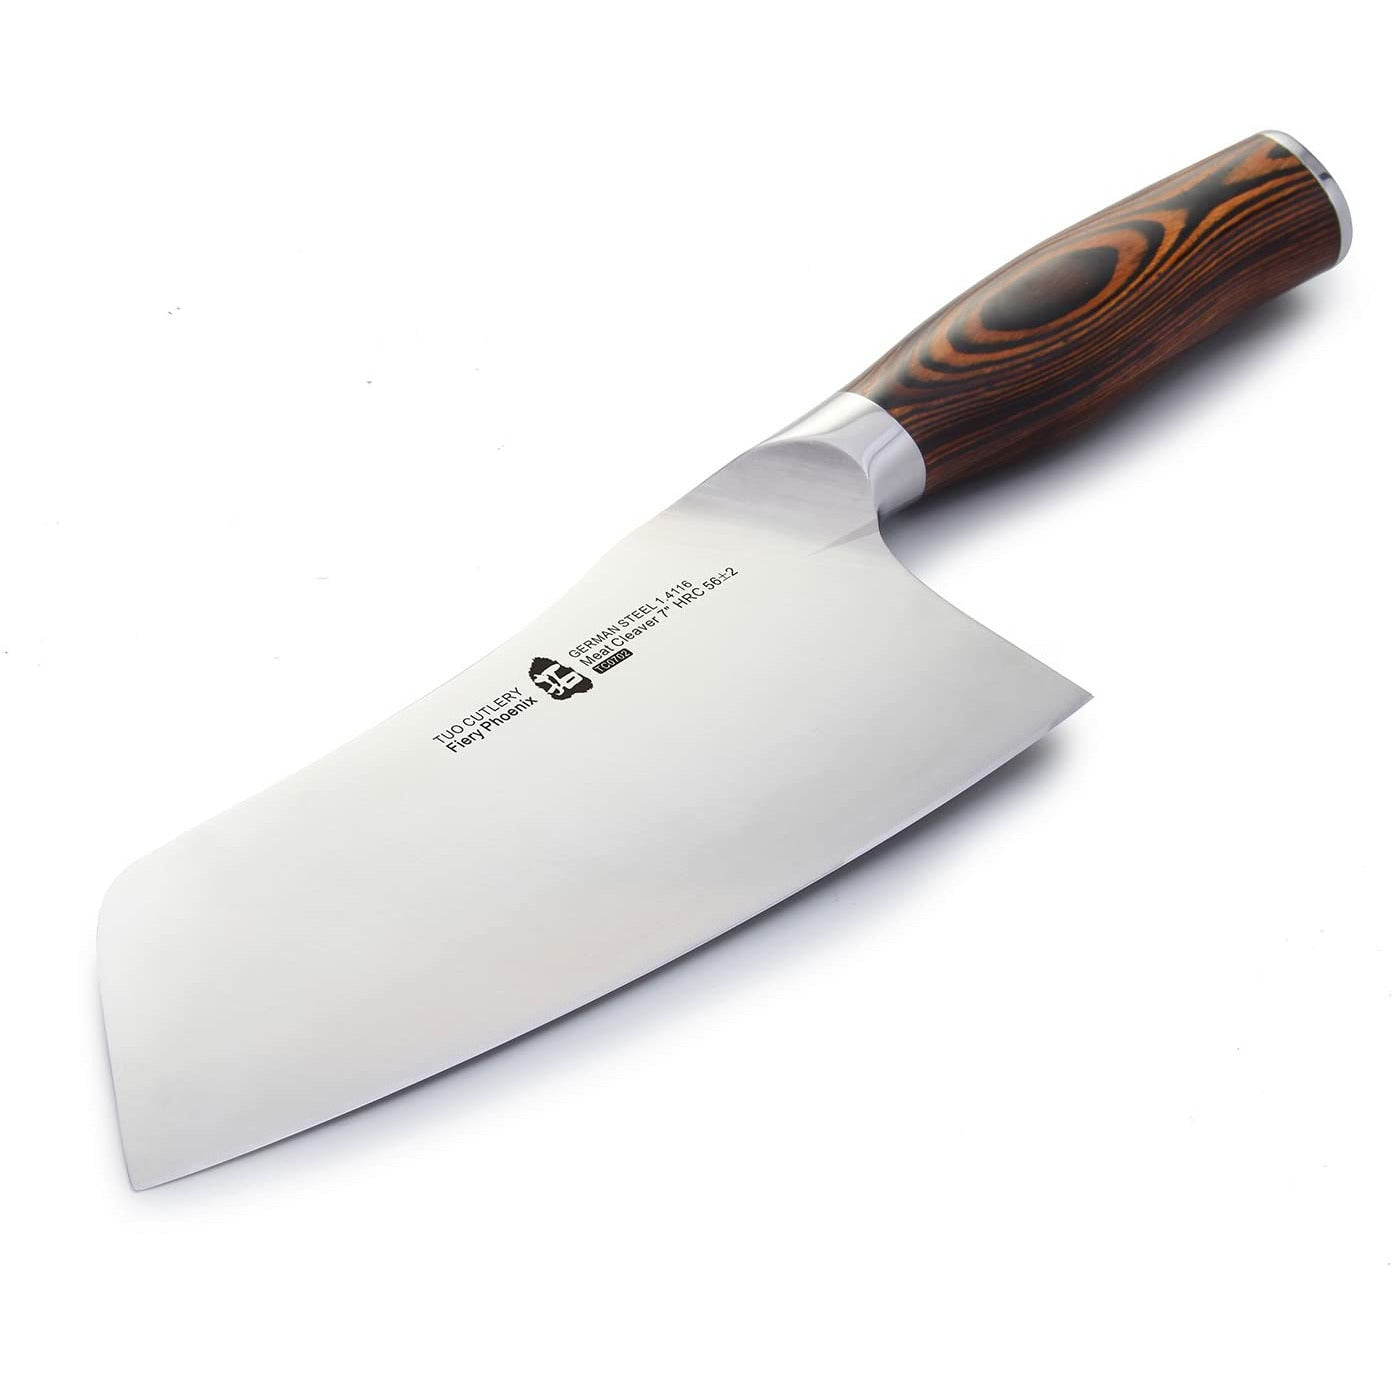 Wölfe Cleaver Knife 7” – Tahoe Kitchen Co